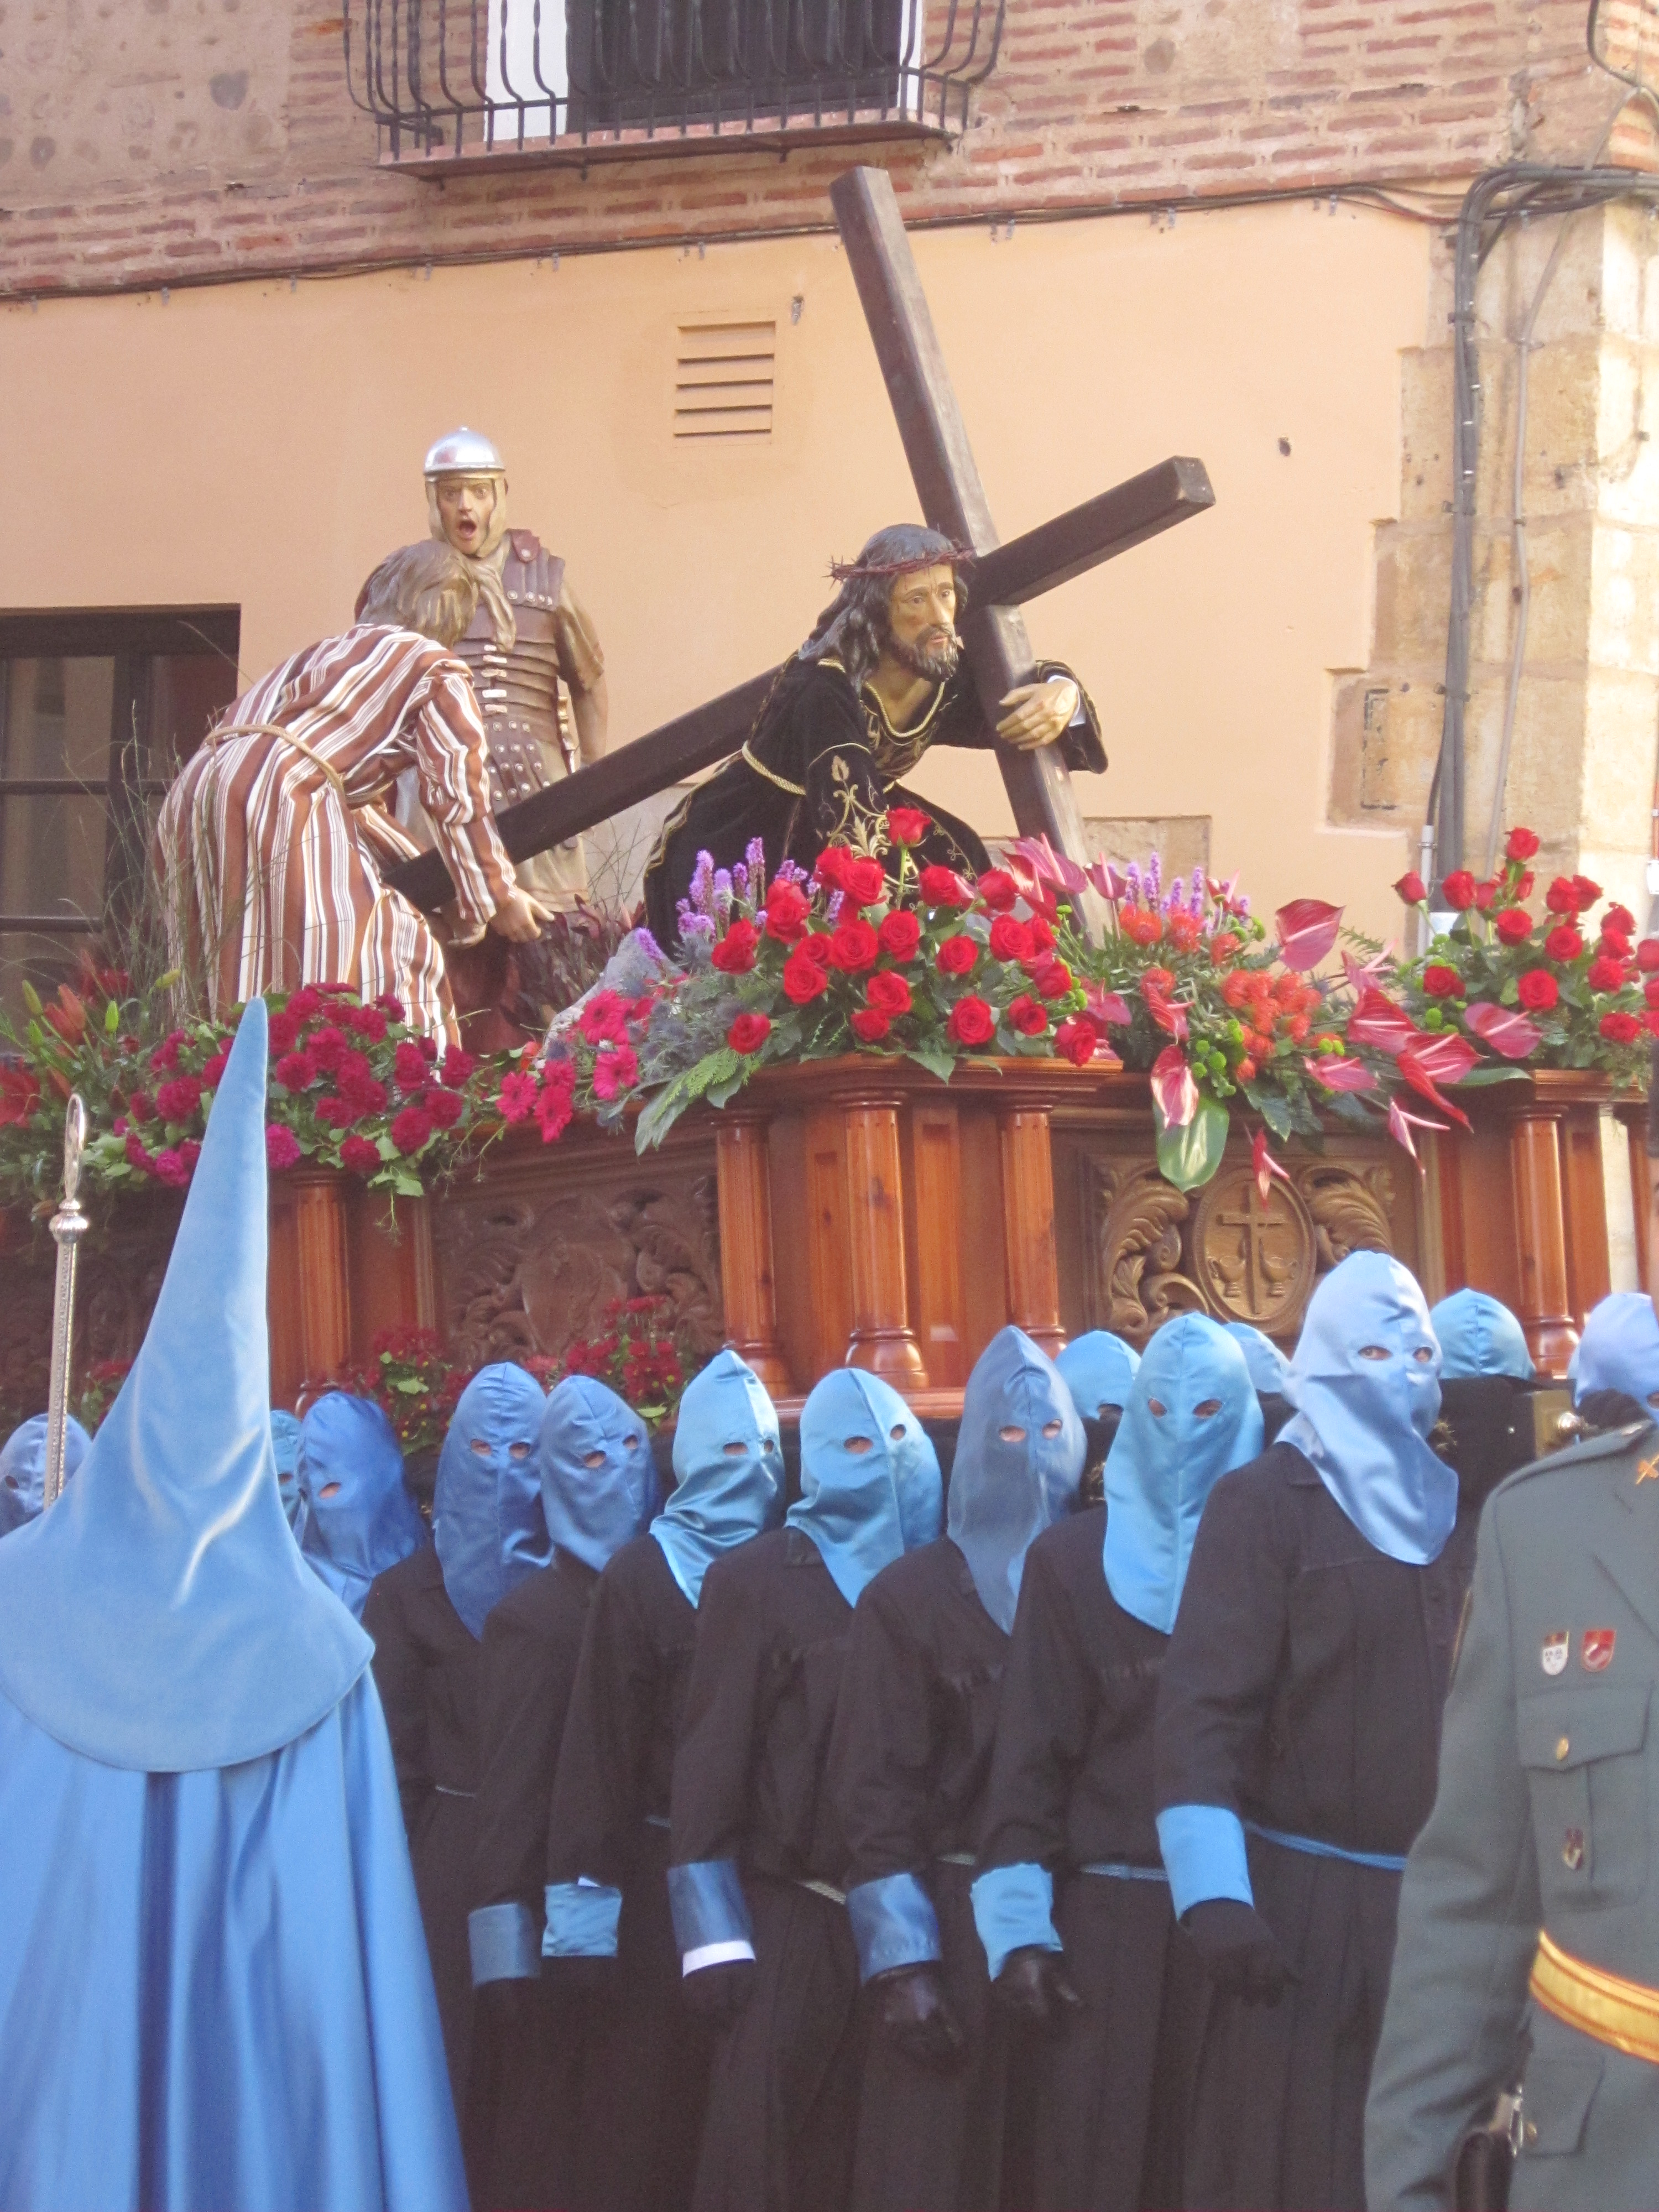 Festumzug am Gründonnerstag in León, unter den Trägern befinden sich inzwischen sehr viele Frauen. Fotos: Gerhardinger